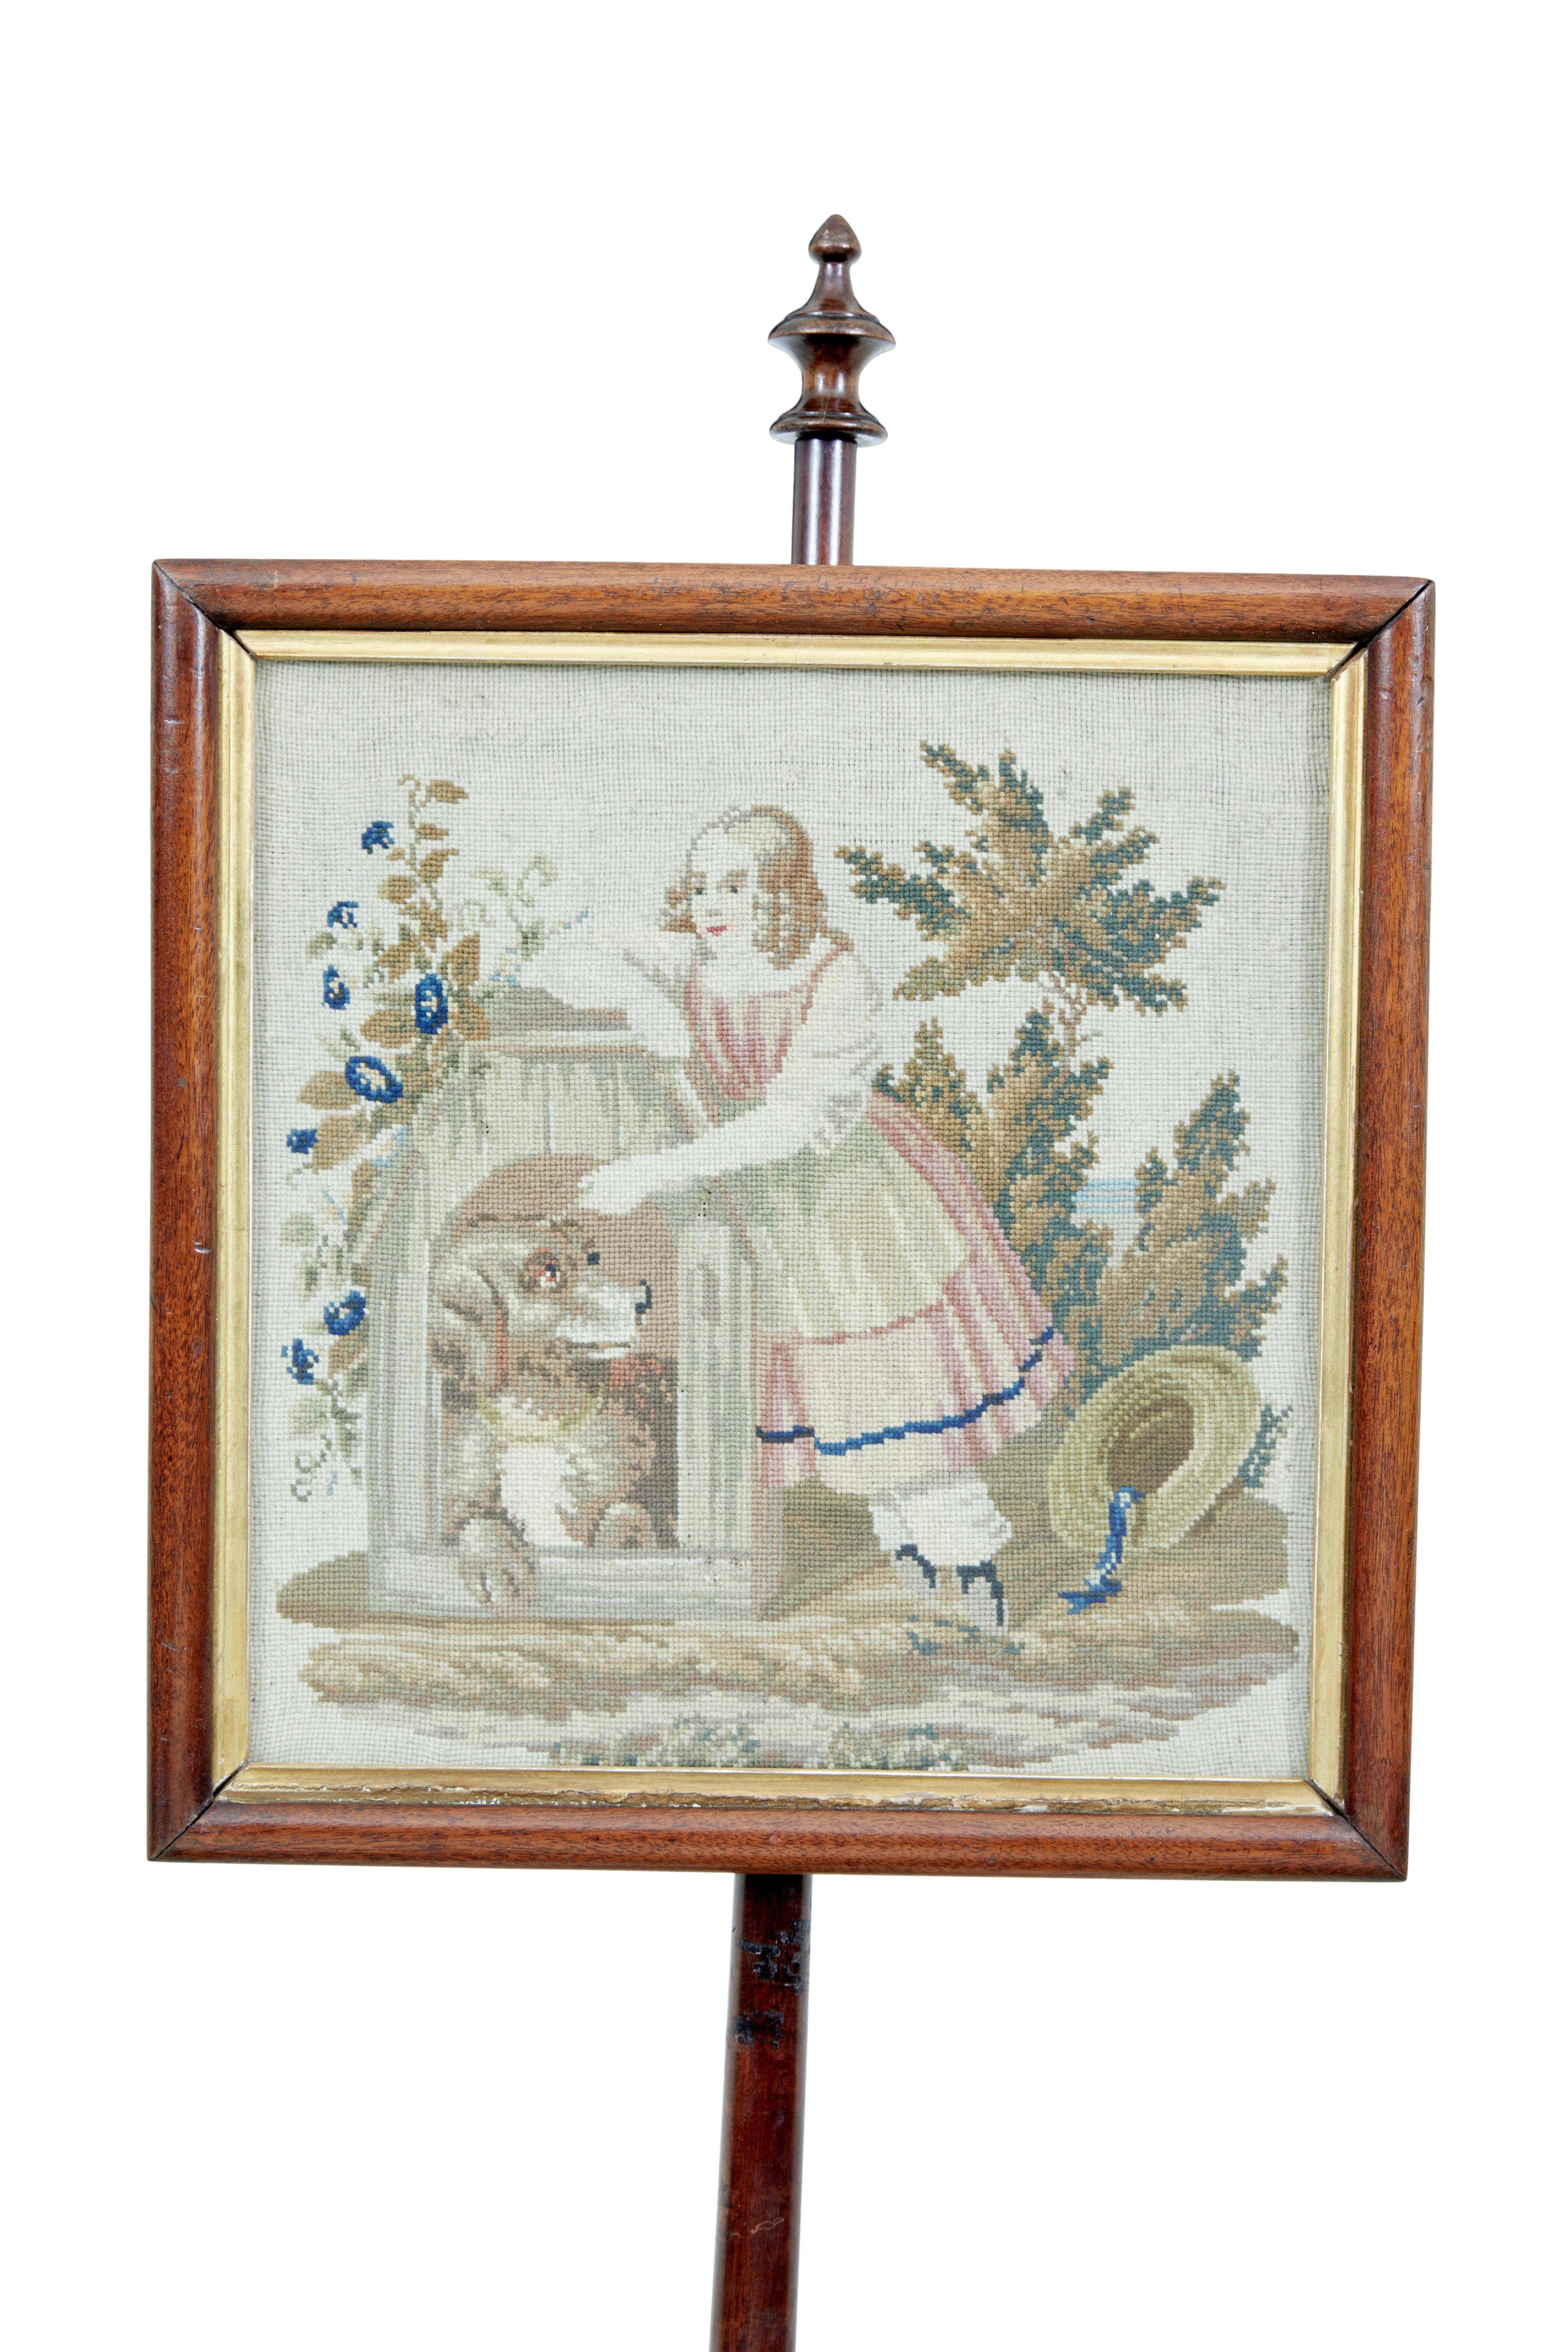 Paravent à poteaux en acajou William IV du XIXe siècle, vers 1830

Tapisserie originale encadrée représentant une jeune femme à l'extérieur avec un chien. Encadrement avec feuilletage doré. Soutenu par une tige tournée et sculptée, il repose sur une